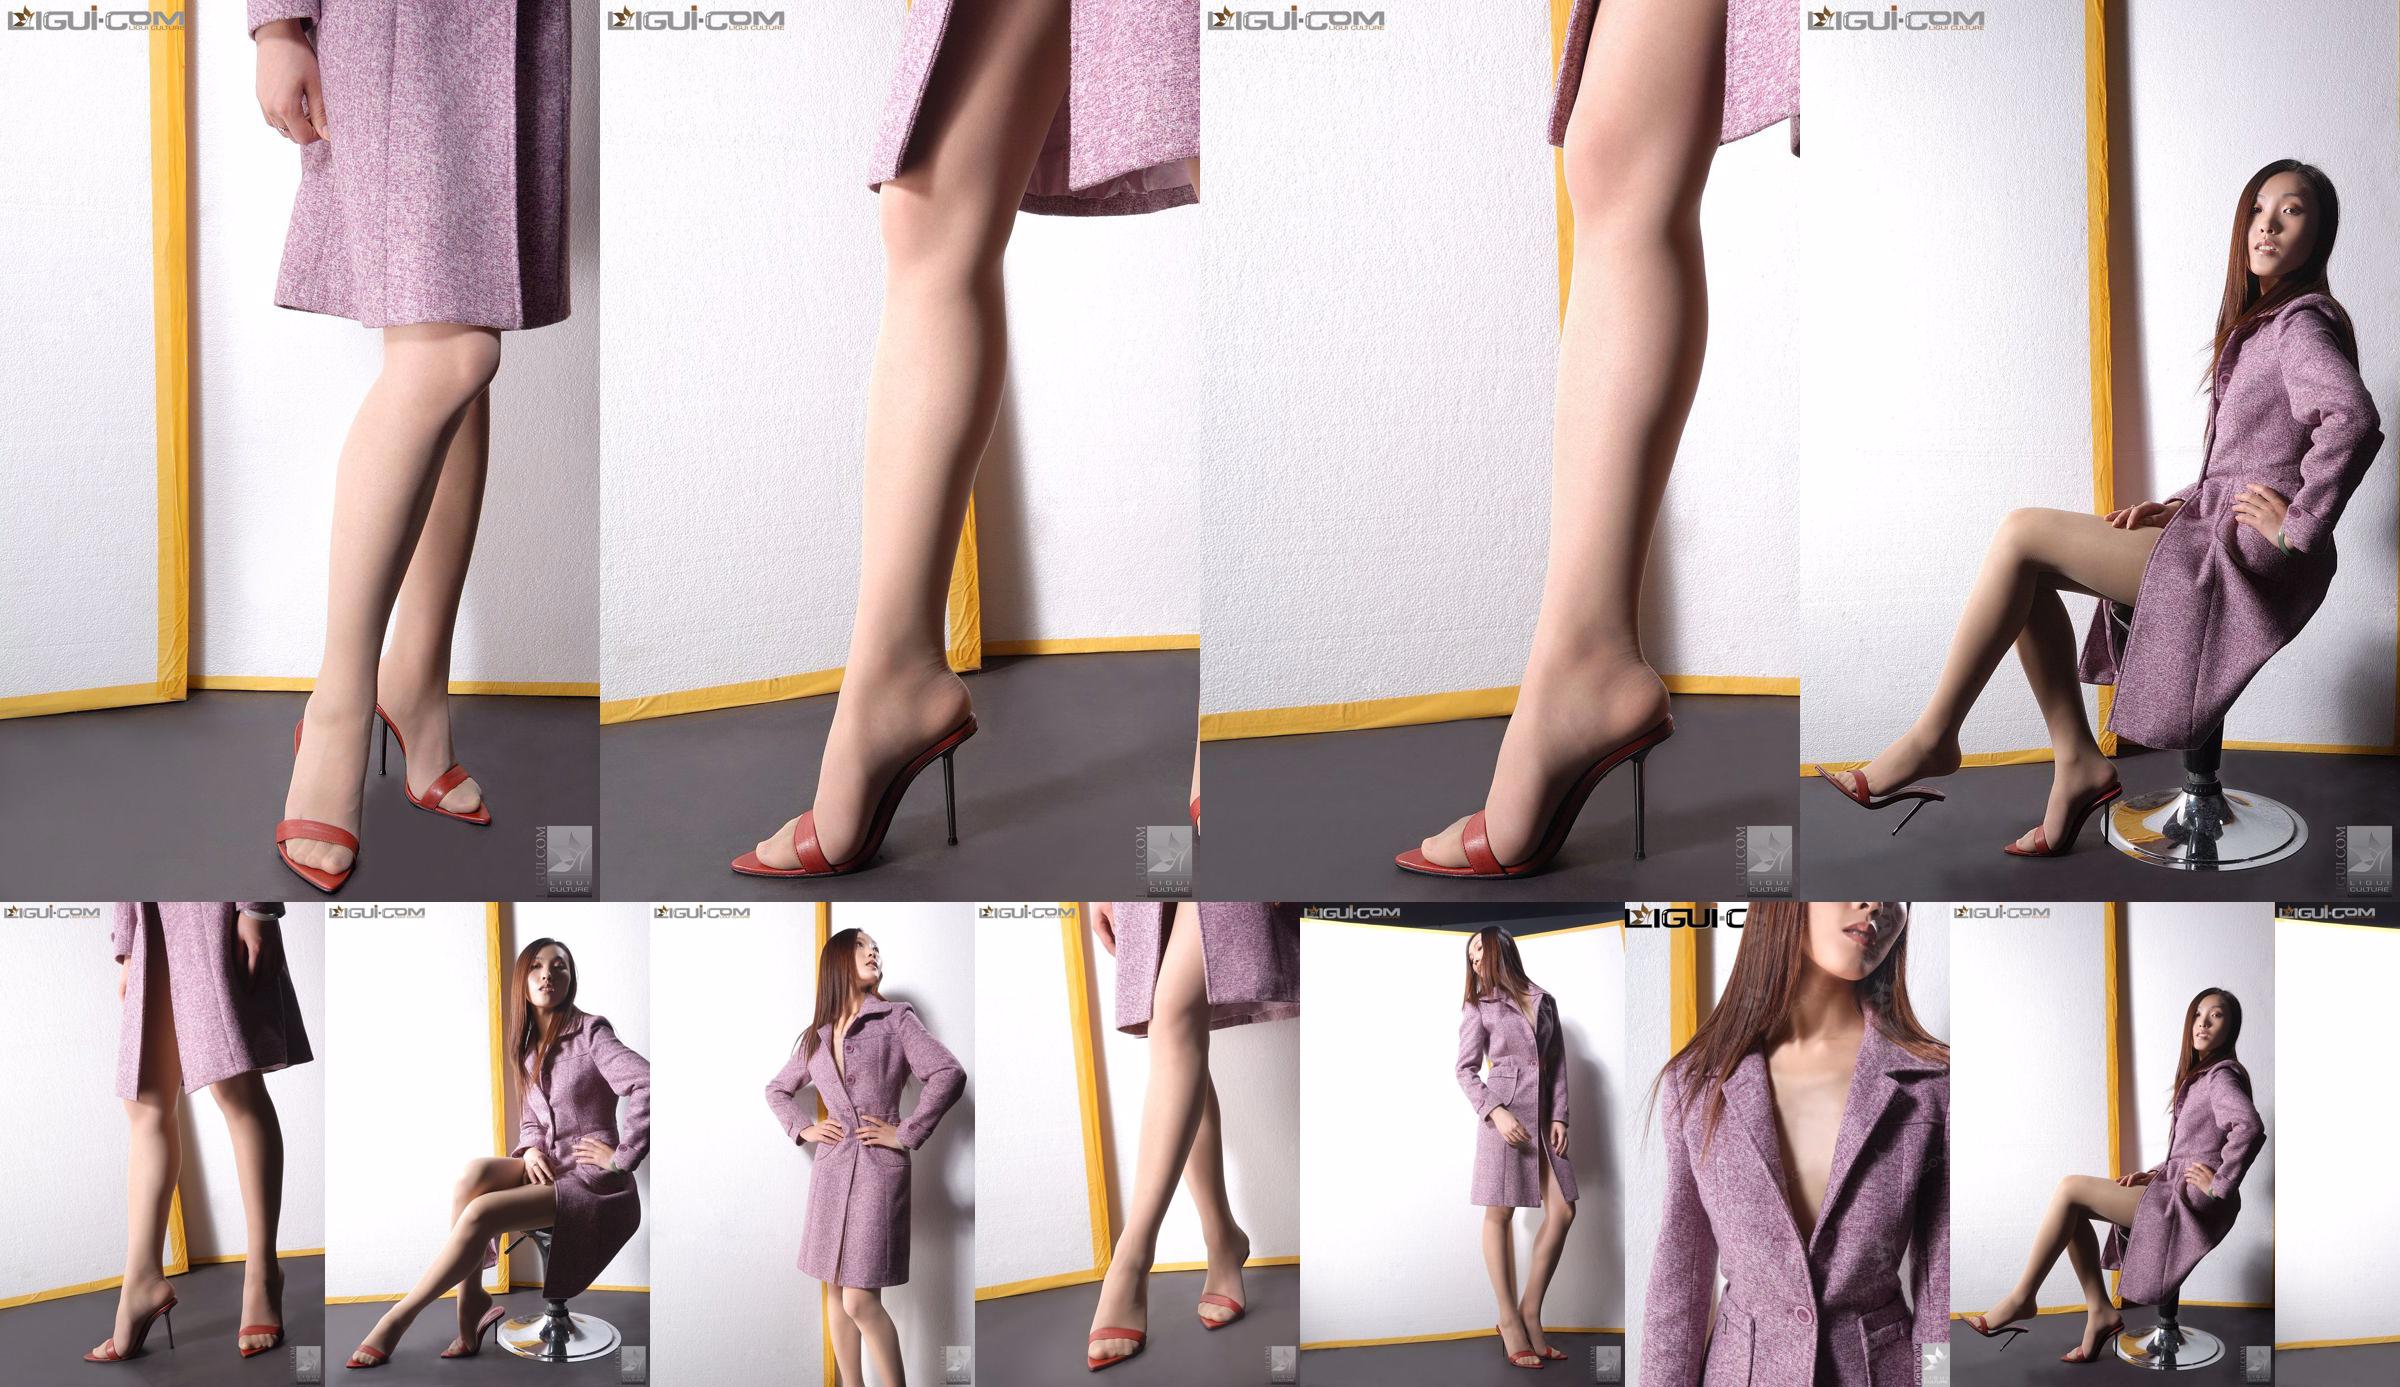 Người mẫu Zhang Ai "Yew Girl with High Heels" [Ligui LiGui] Ảnh chân dài xinh đẹp No.3c6a95 Trang 1